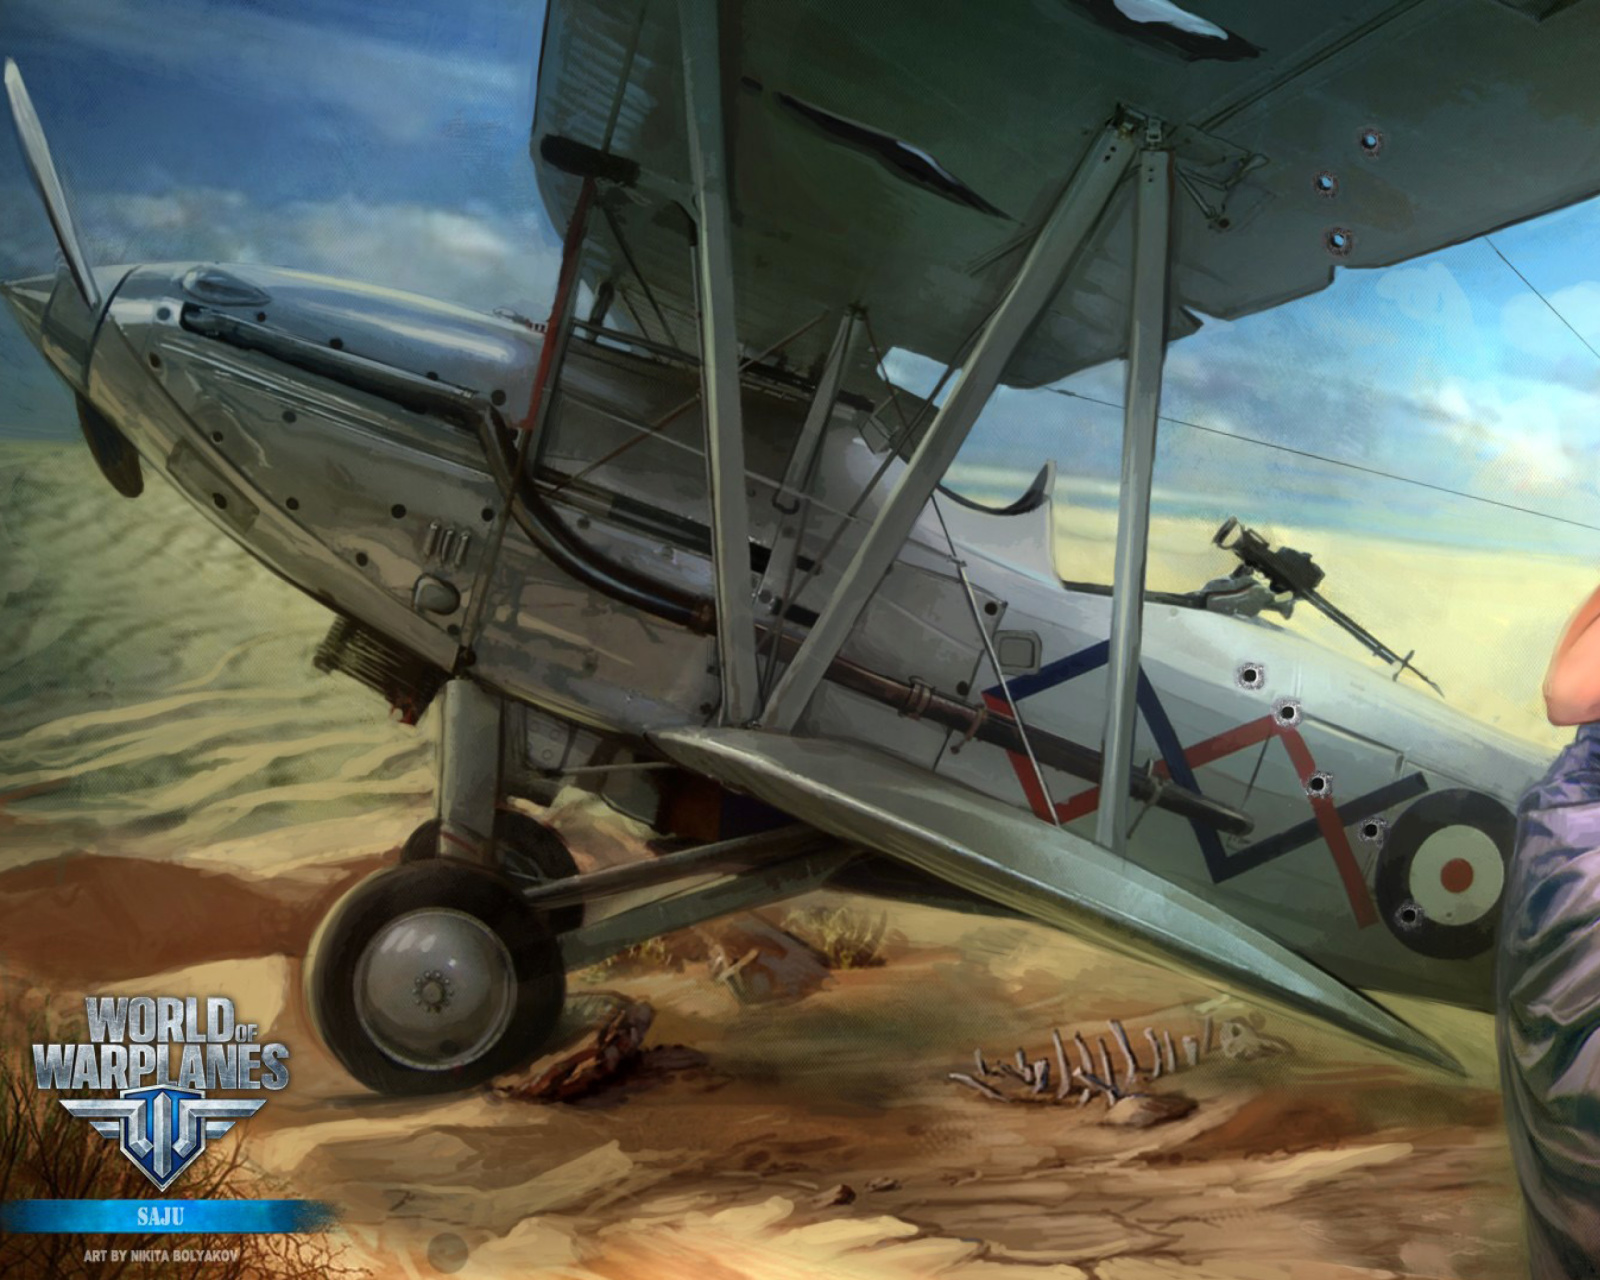 World of Warplanes wallpaper 1600x1280